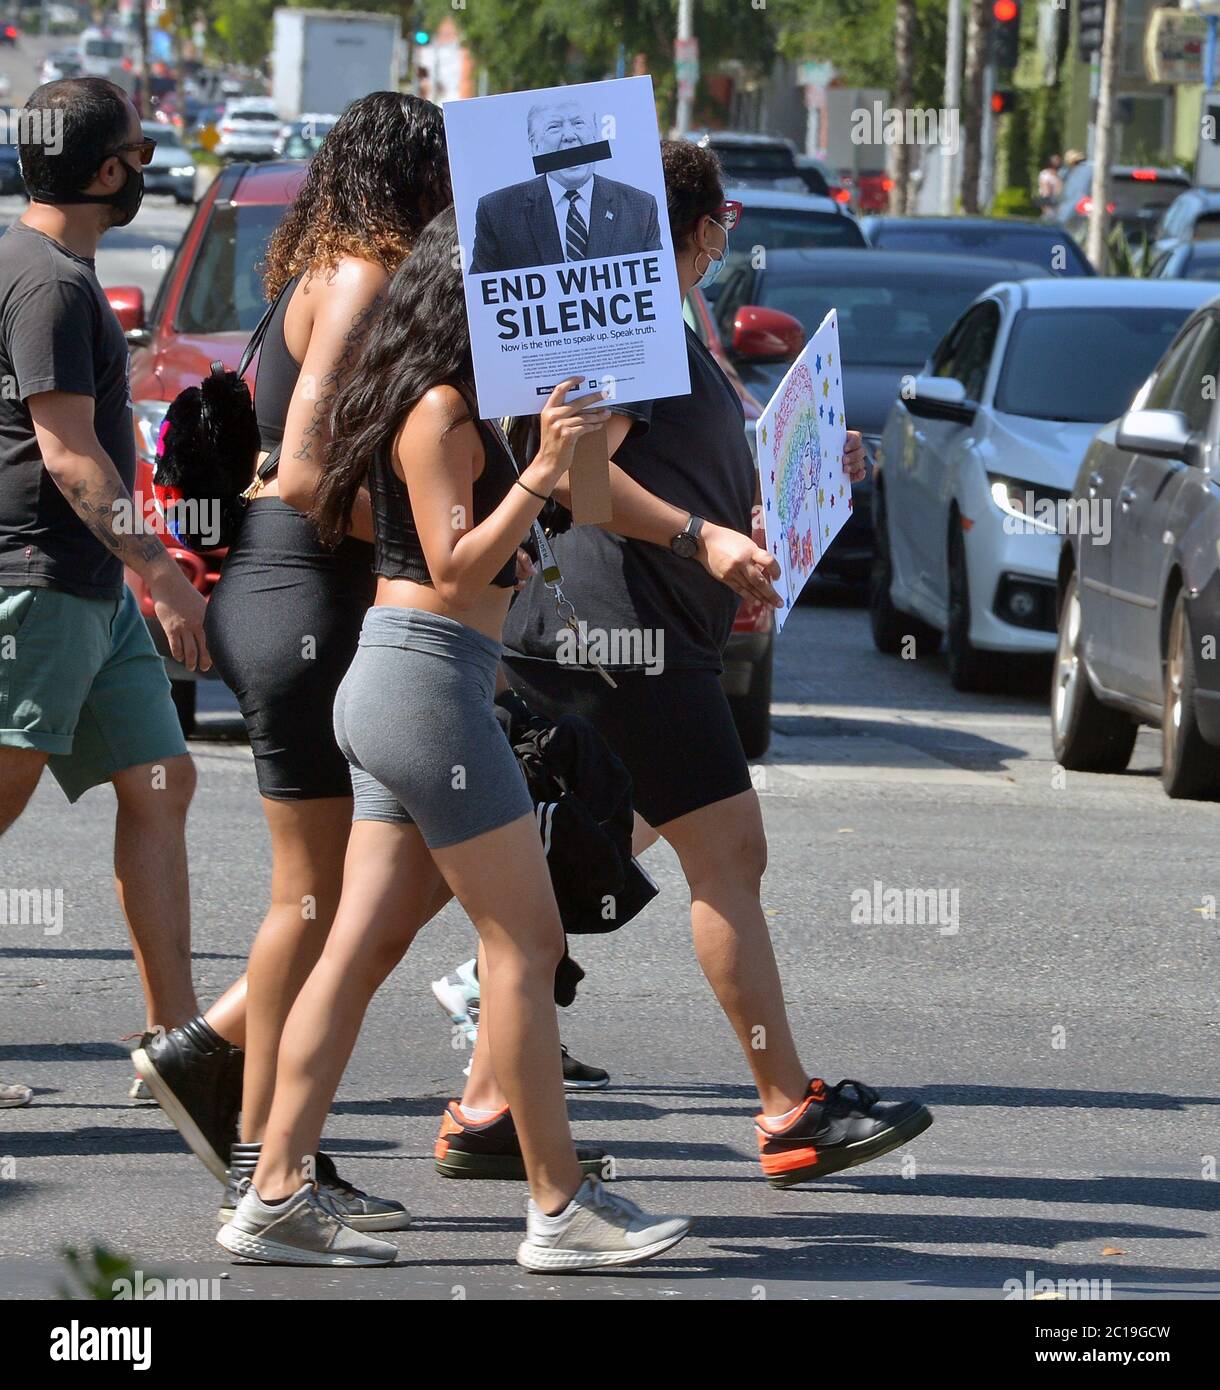 Los Angeles, Usa. Juni 2020. Die Demonstranten von 'All Black Lives Matter' laufen entlang des Santa Monica Blvd., nachdem sie nach West Hollywood marschiert sind, um von Hollywood aus rassistische Ungerechtigkeit zu verurteilen und die LGBTQ-Rechte zu unterstützen, da die Proteste am Sonntag, dem 14. Juni 2020, landesweit fortgesetzt wurden. Am Sonntag, dem Flag Day, kamen schätzungsweise 20,000 Menschen zu einem solidaritätsmarsch gegen Rassismus von Hollywood nach West Hollywood, wo die Stadt ursprünglich die LA Pride Parade ausstellte, bevor sie wegen des Coronavirus abgesagt wurde. Foto von Jim Ruymen/UPI Kredit: UPI/Alamy Live Nachrichten Stockfoto